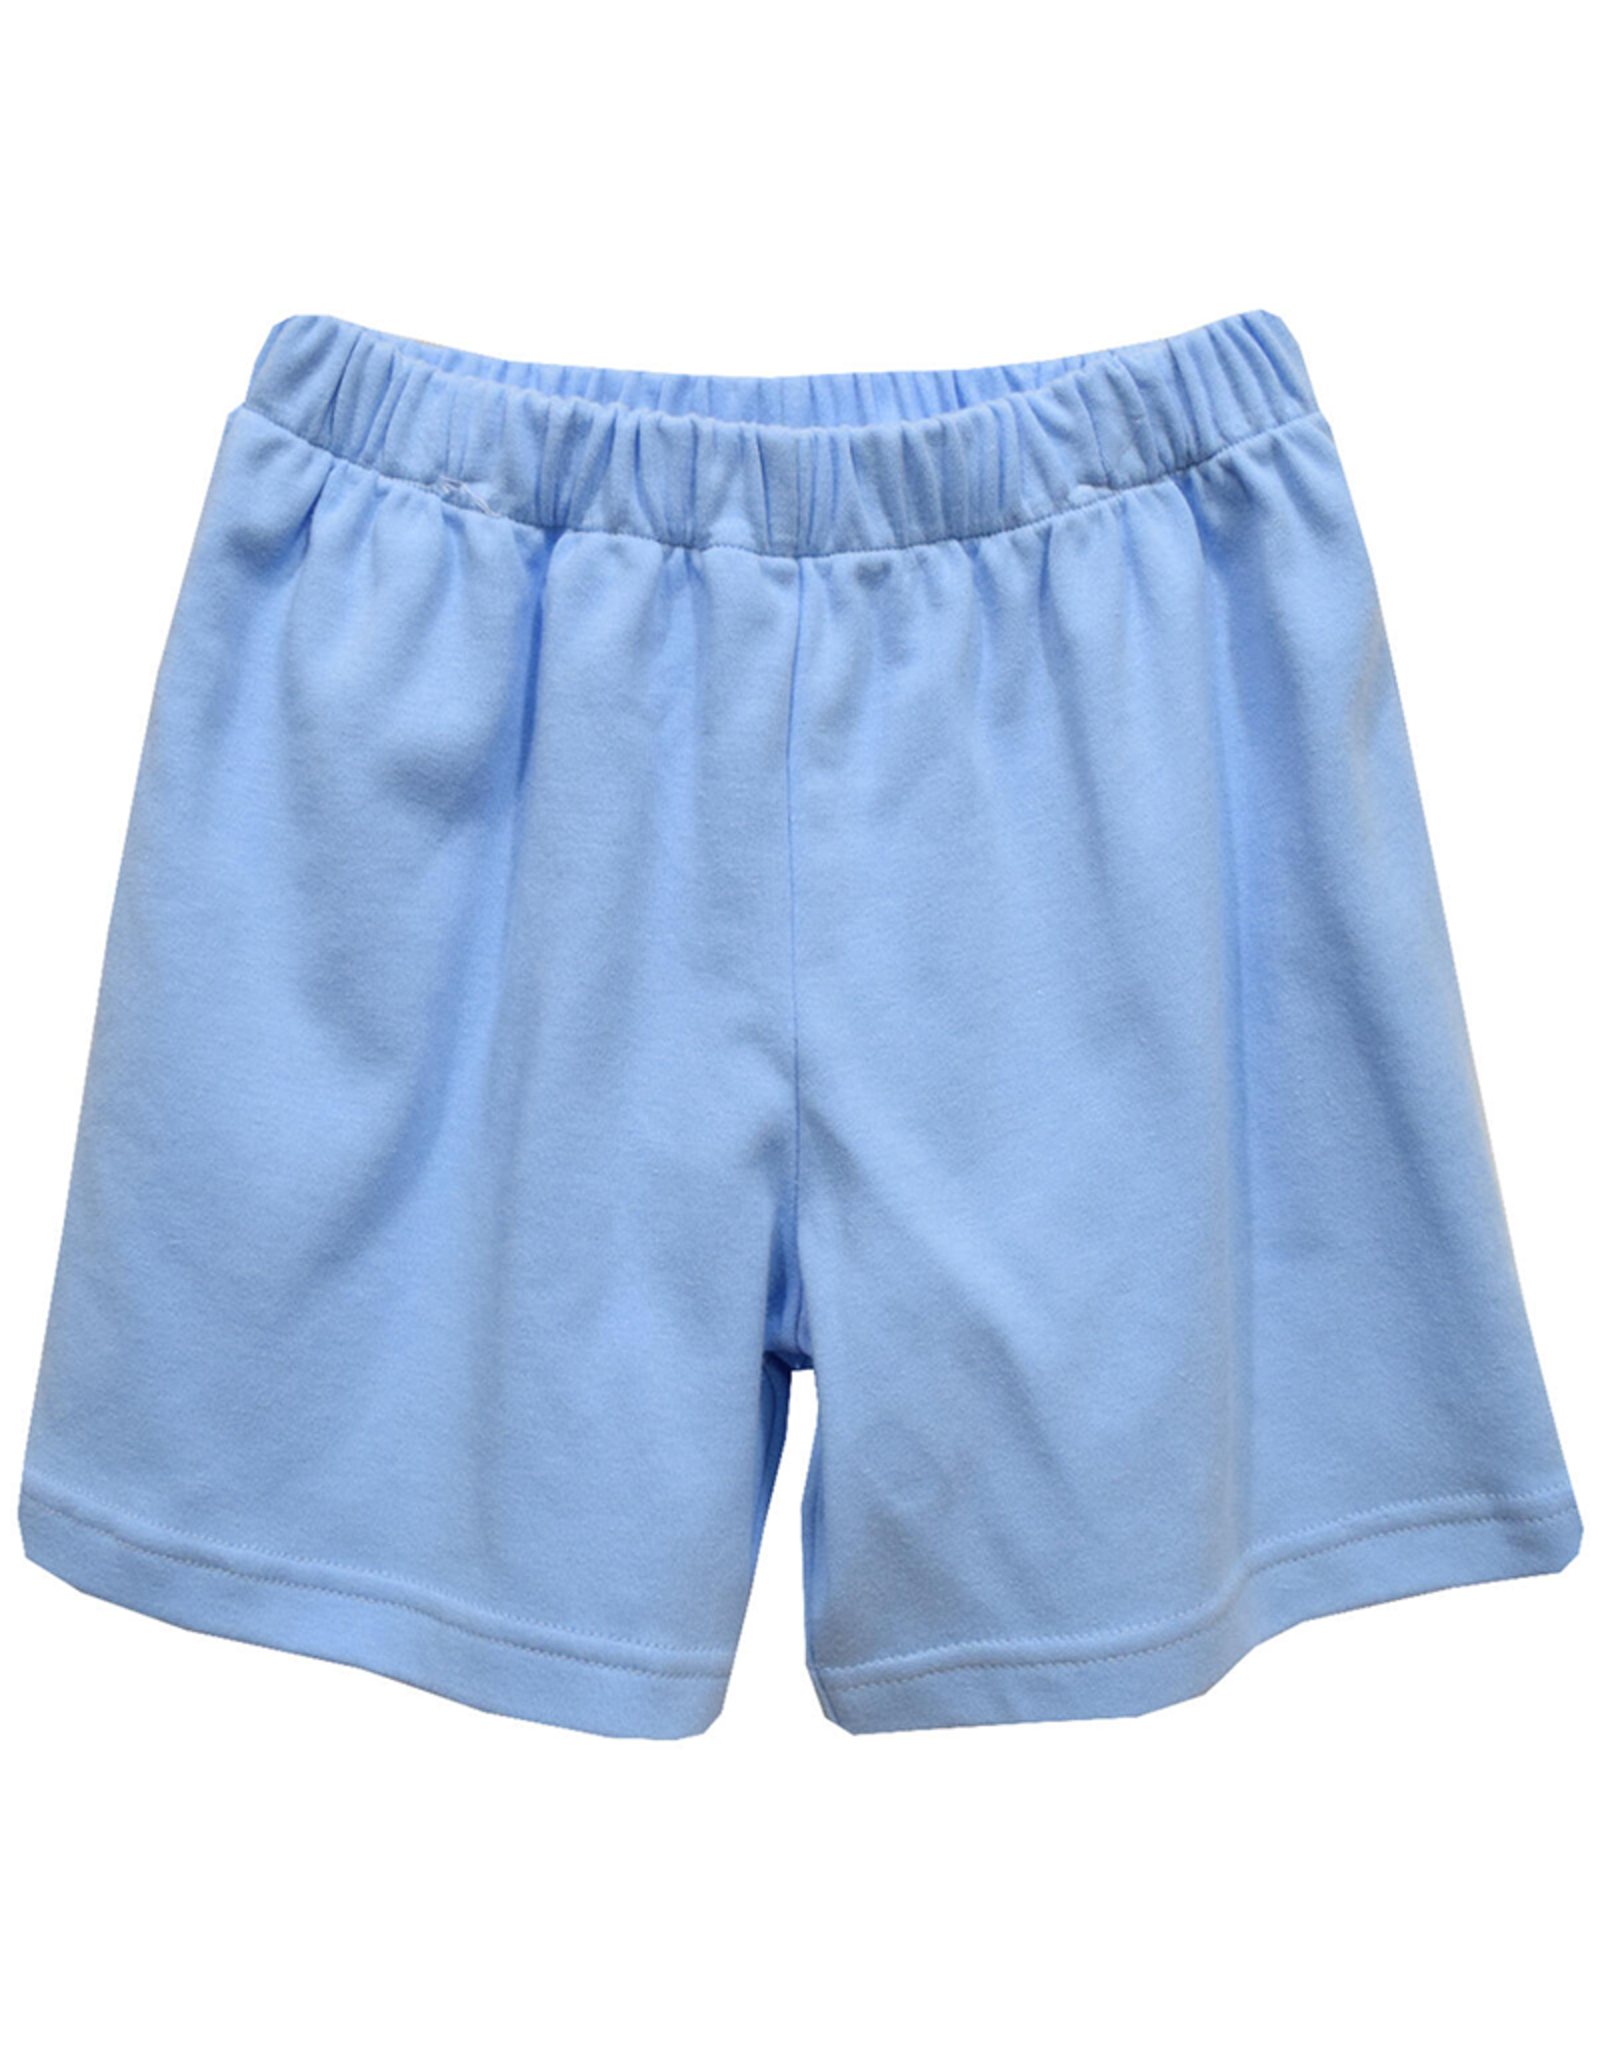 Vive la Fete VFS24 Light Blue Knit Boy Short